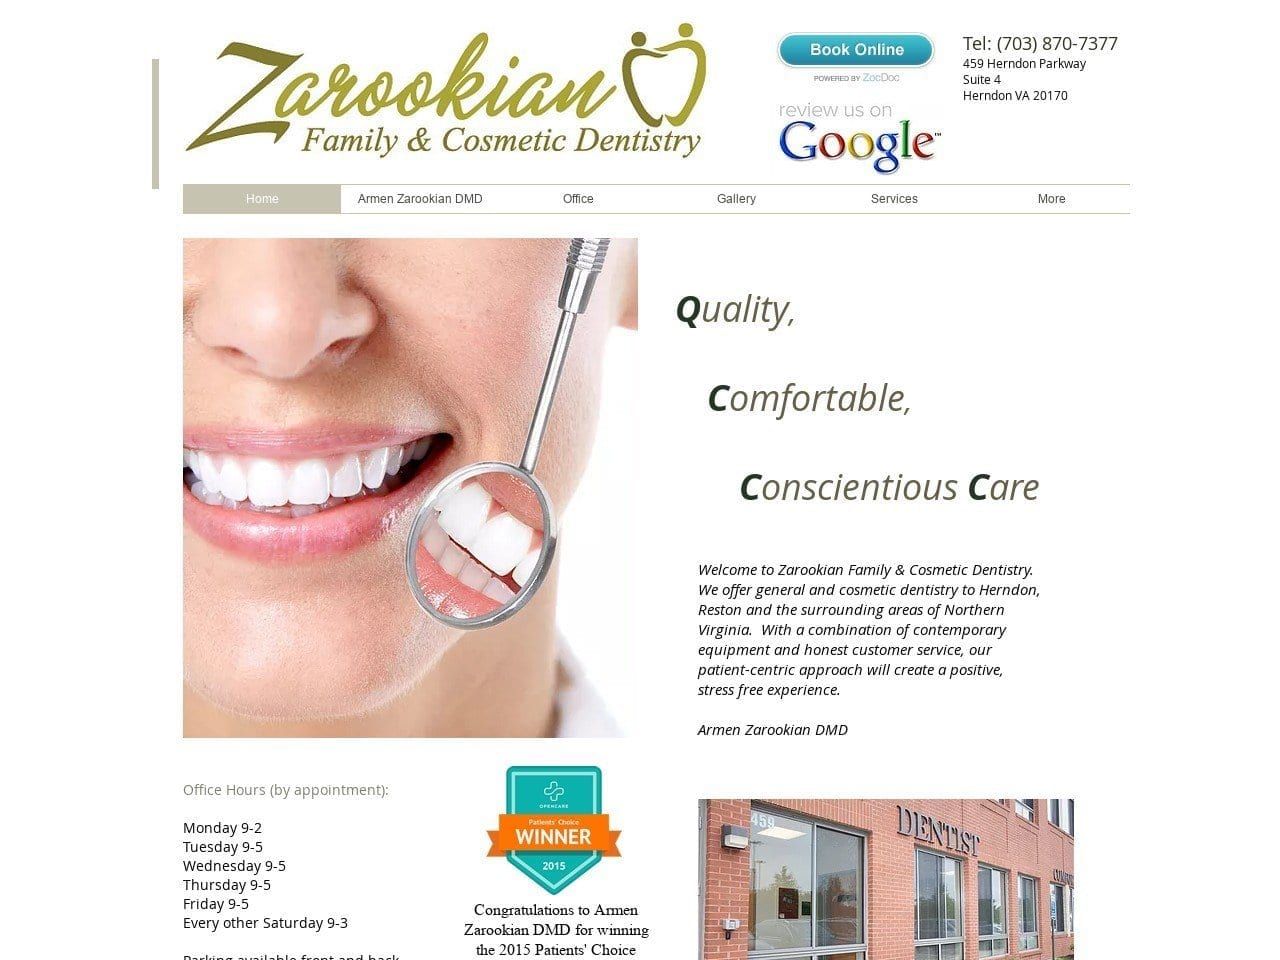 Armen Zarookian DMD Website Screenshot from herndon-dentistry.com